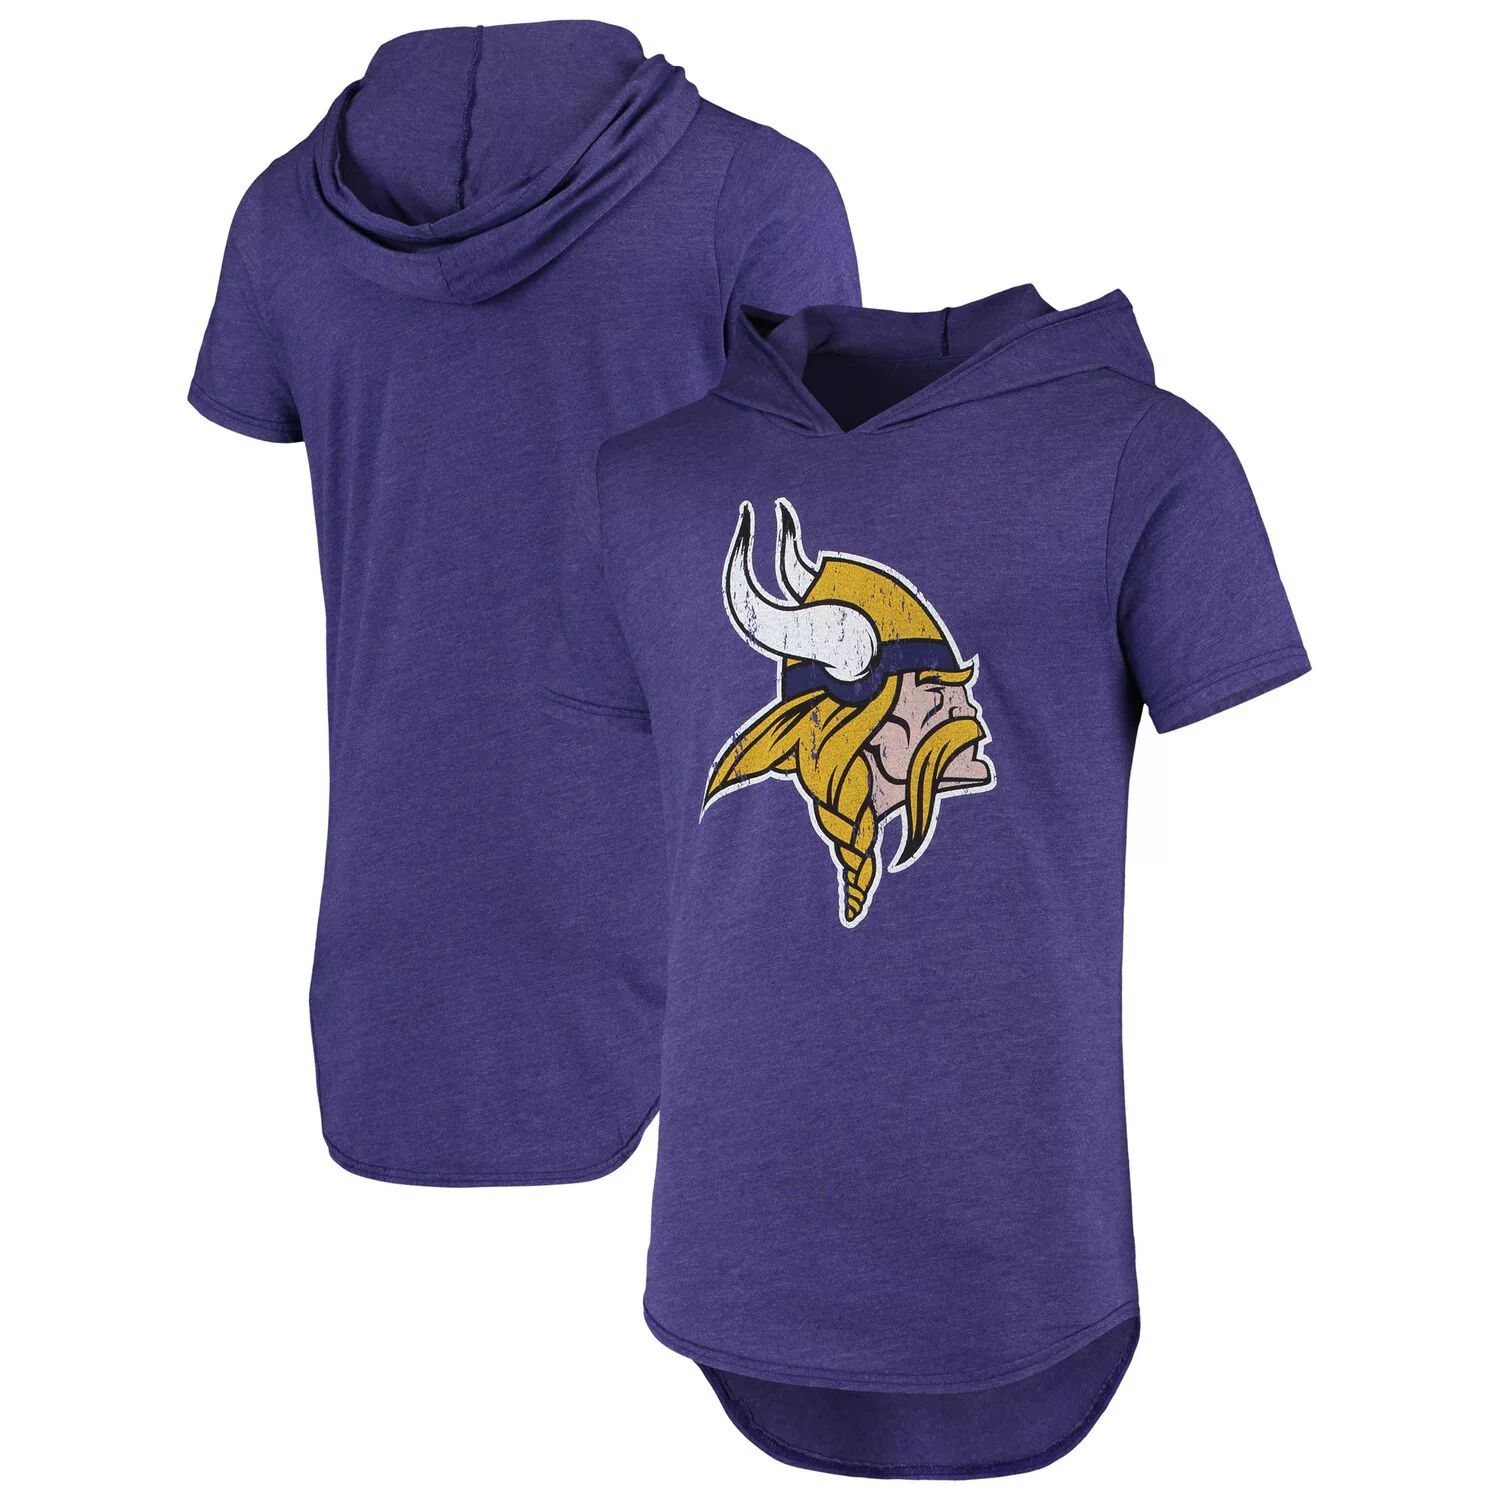 цена Мужская фиолетовая футболка с капюшоном с логотипом Minnesota Vikings Tri-Blend Majestic